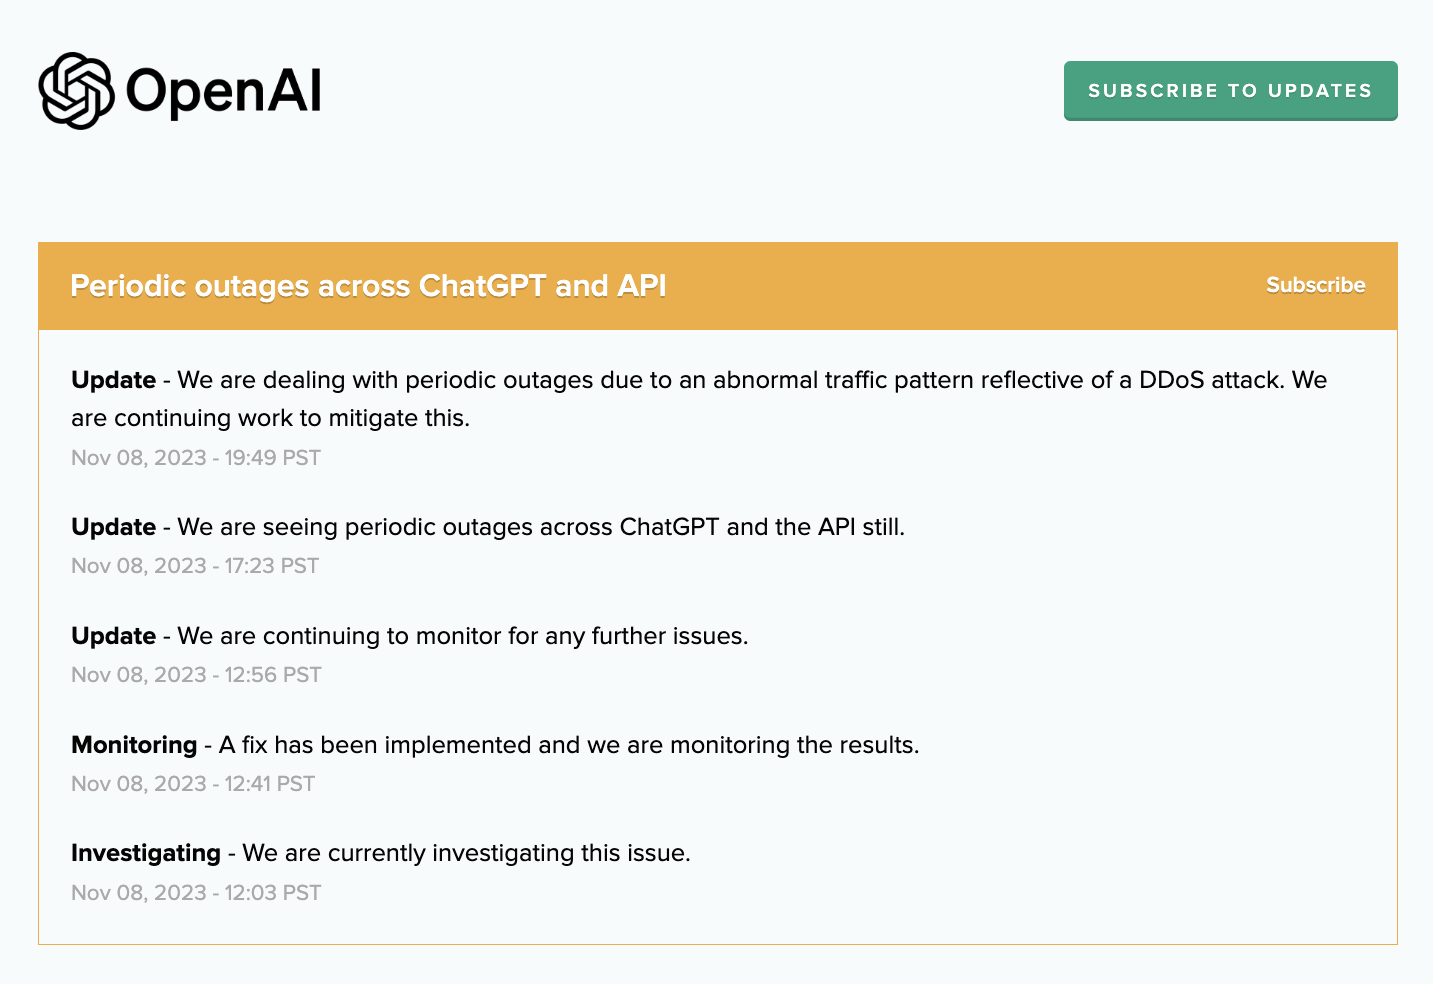 Los ataques DDoS a los servicios OpenAI provocan interrupciones periódicas de ChatGPT y API